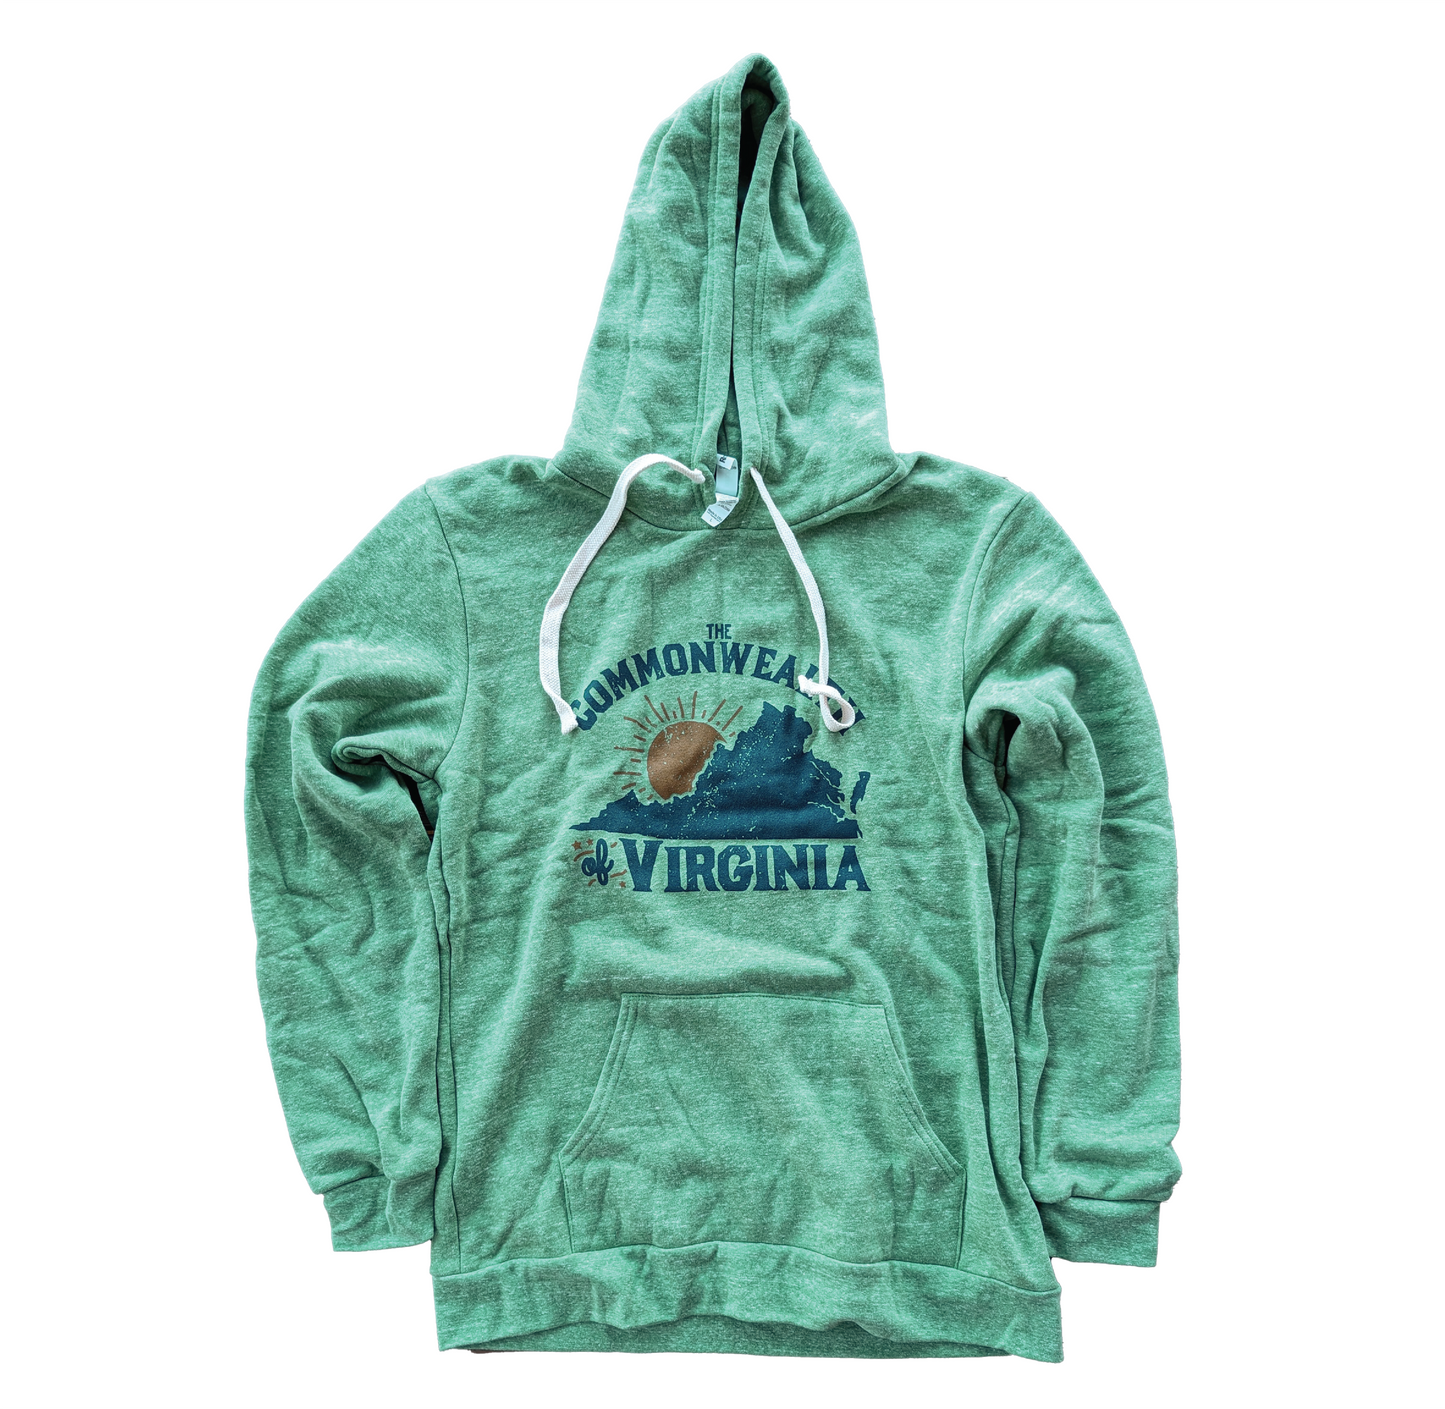 The Commonwealth of Virginia Hoodie Sweatshirt